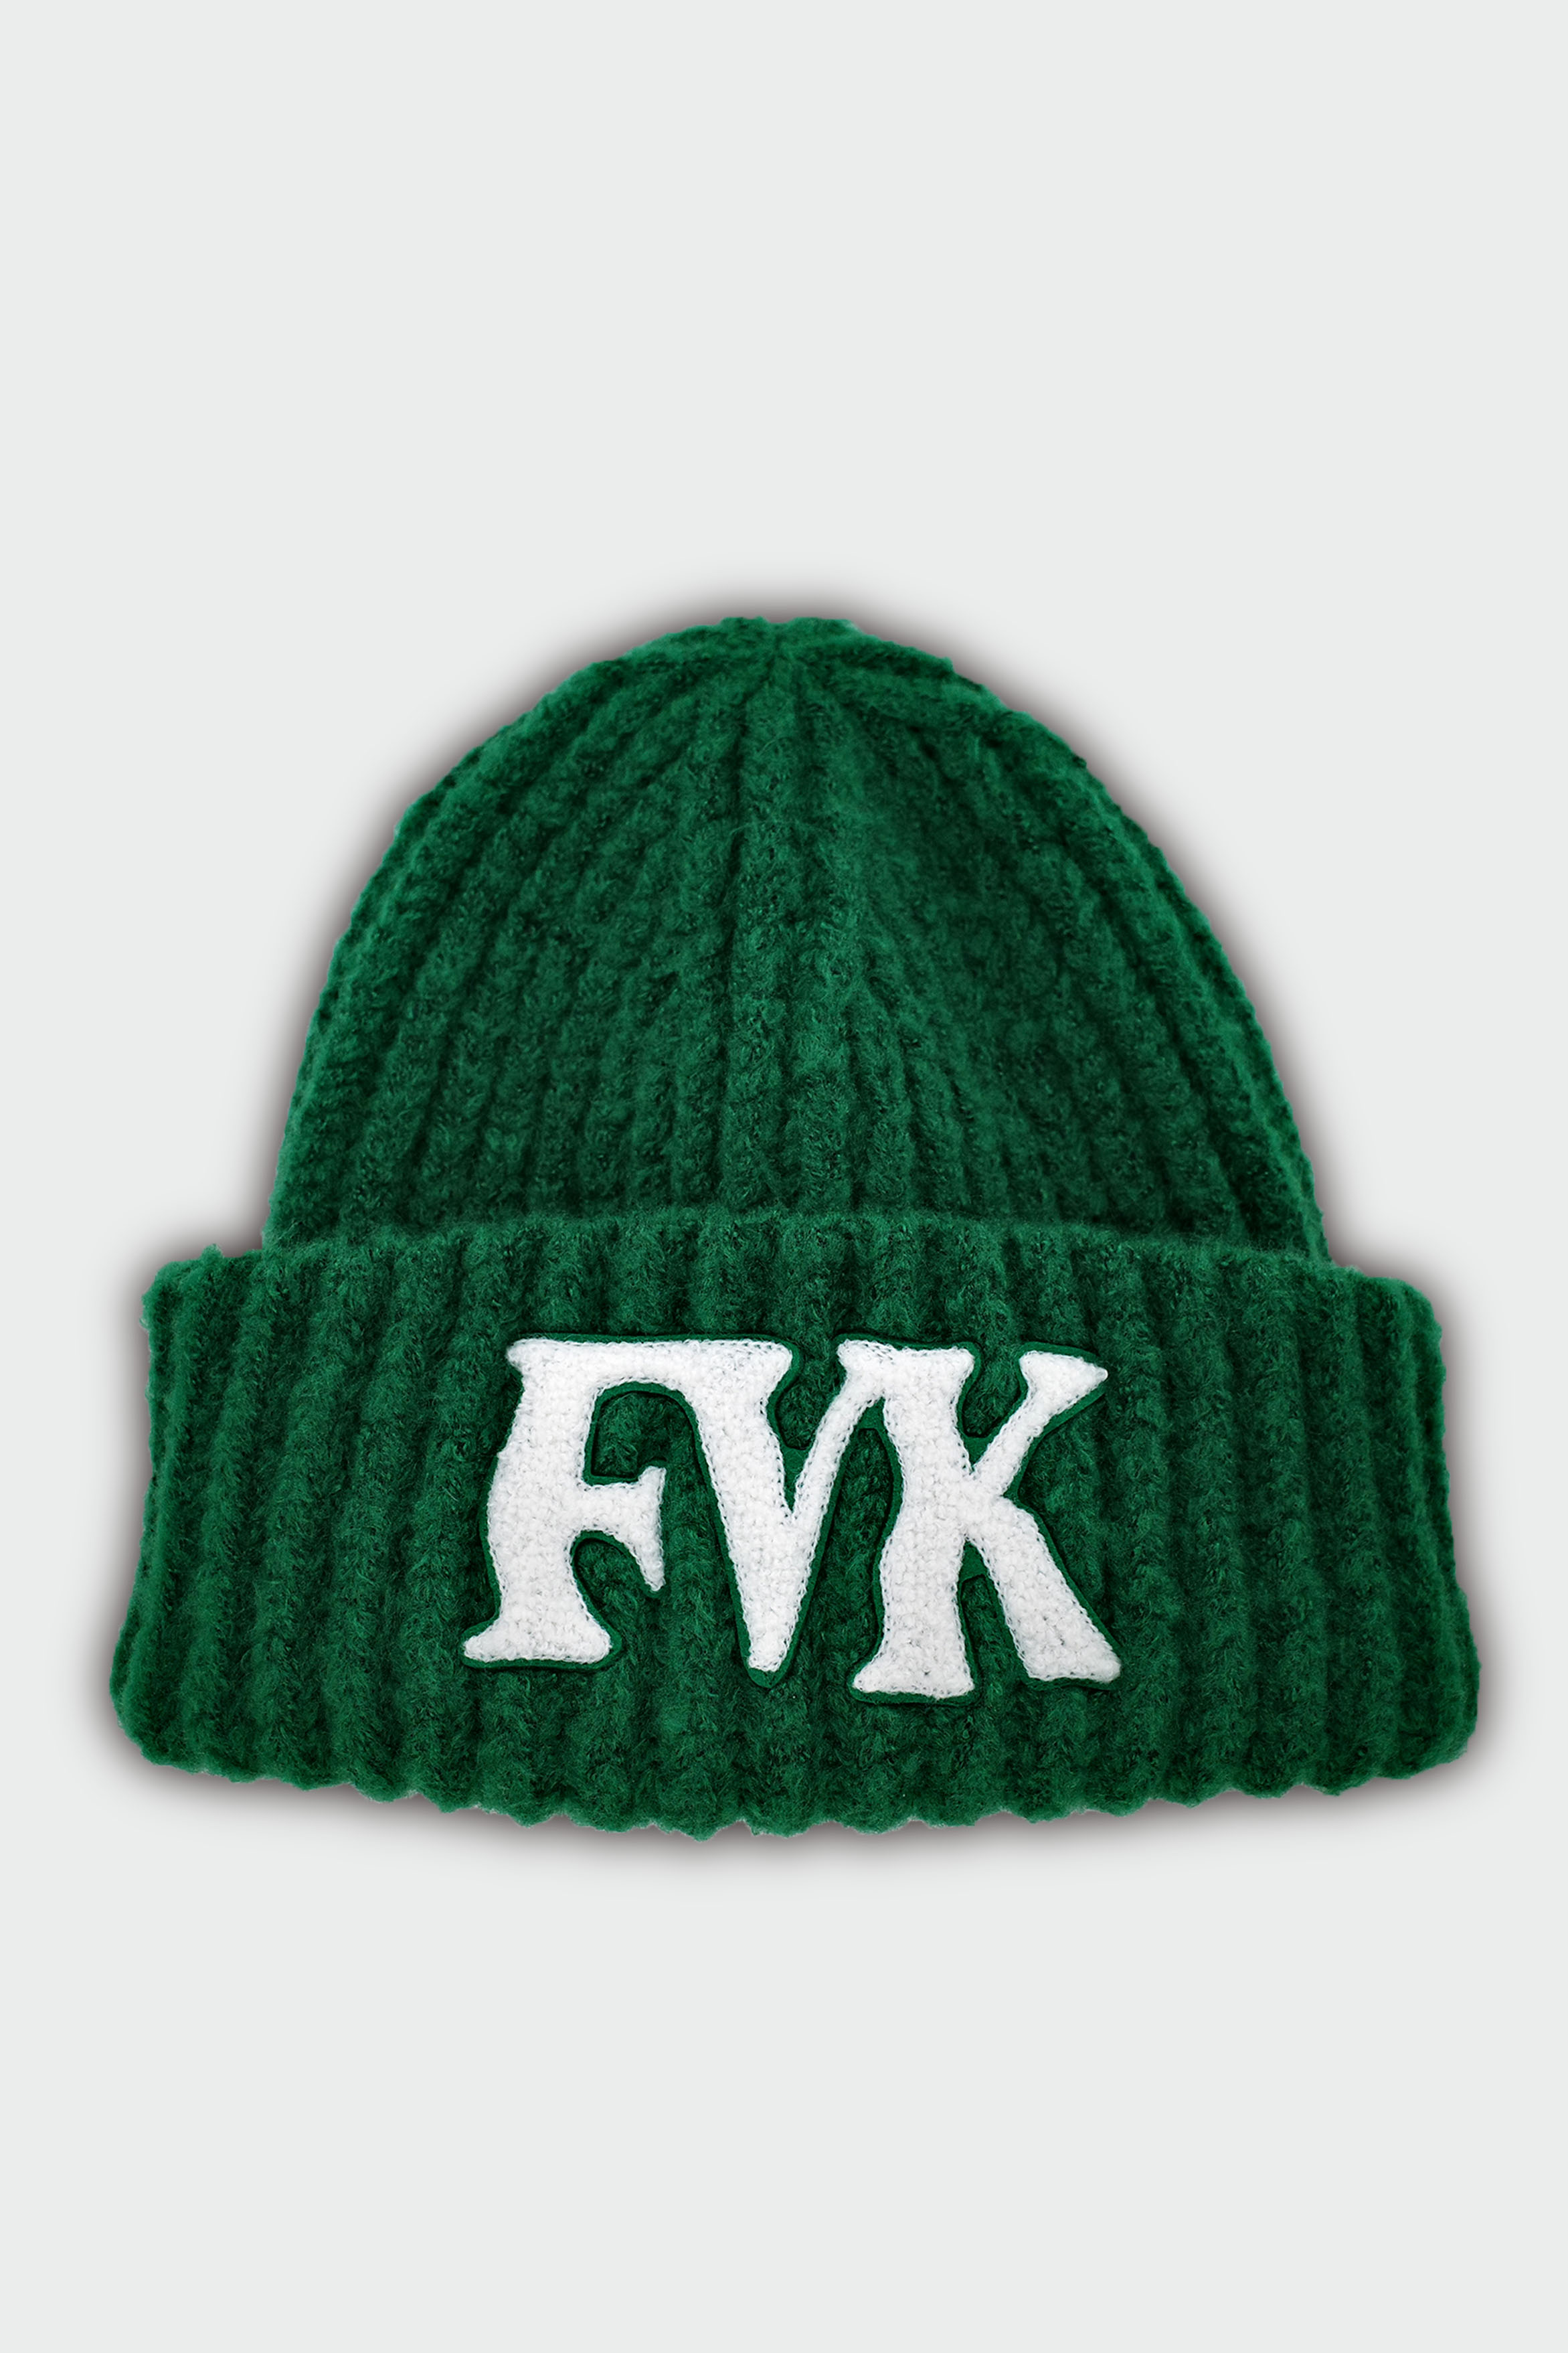 FVK logo beanie (green)